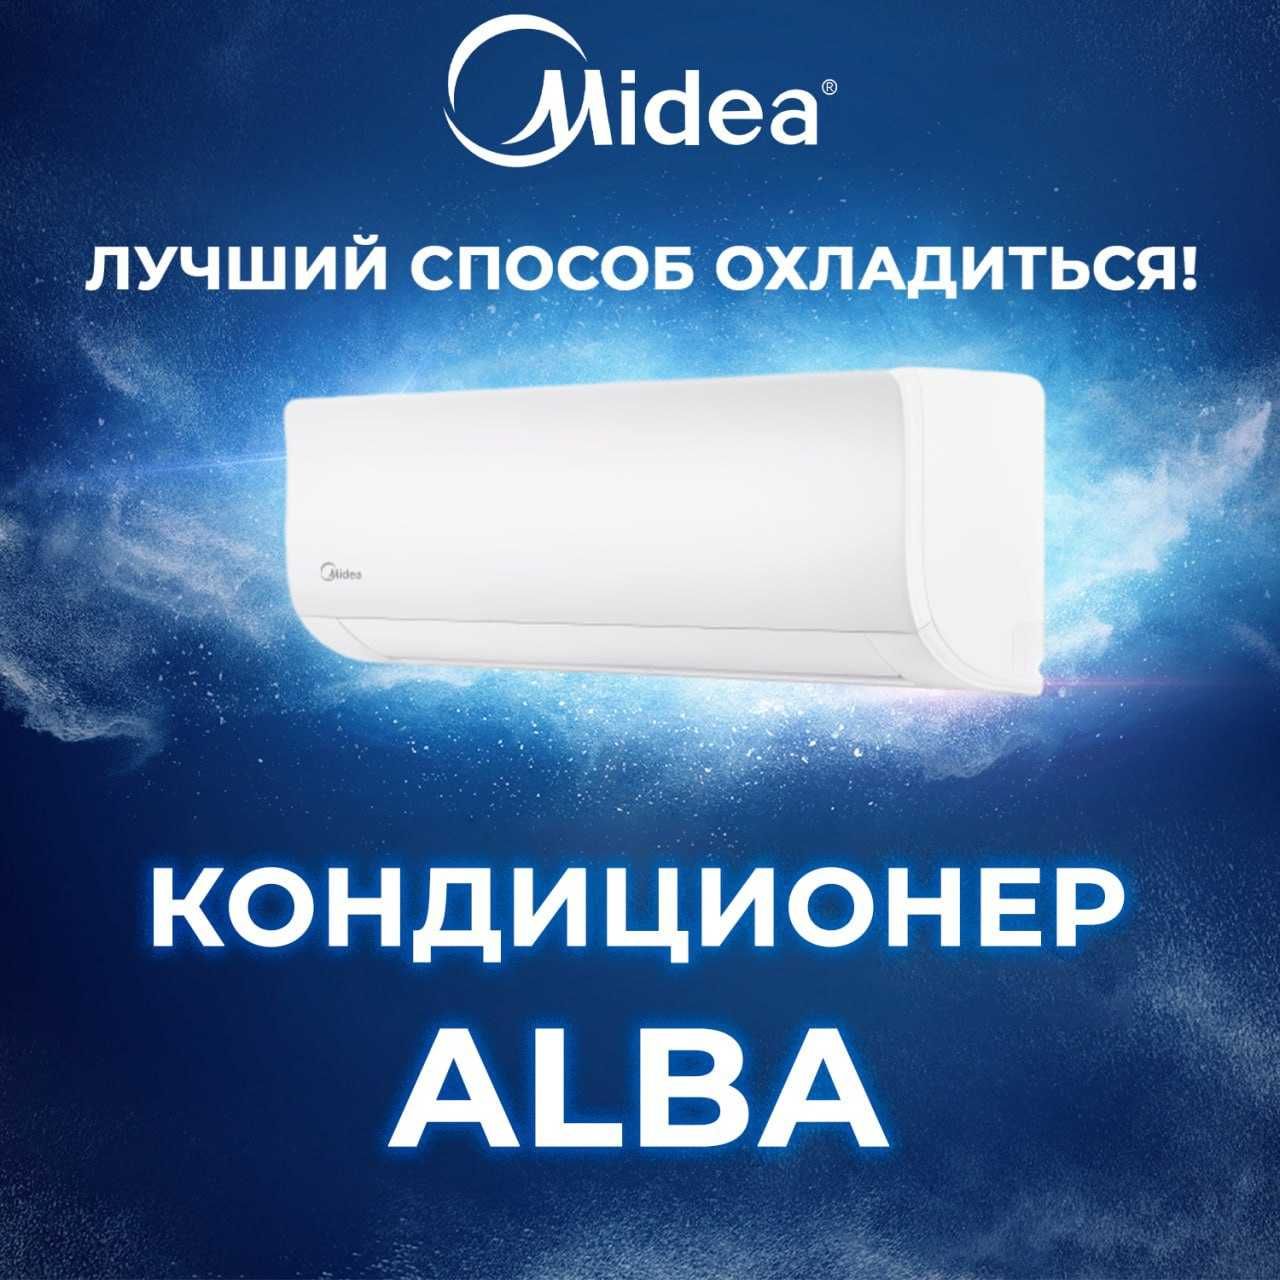 Кондиционер Midea ALBA ( АЛЬБА ) Low Voltage Inverter ( Инверторный )